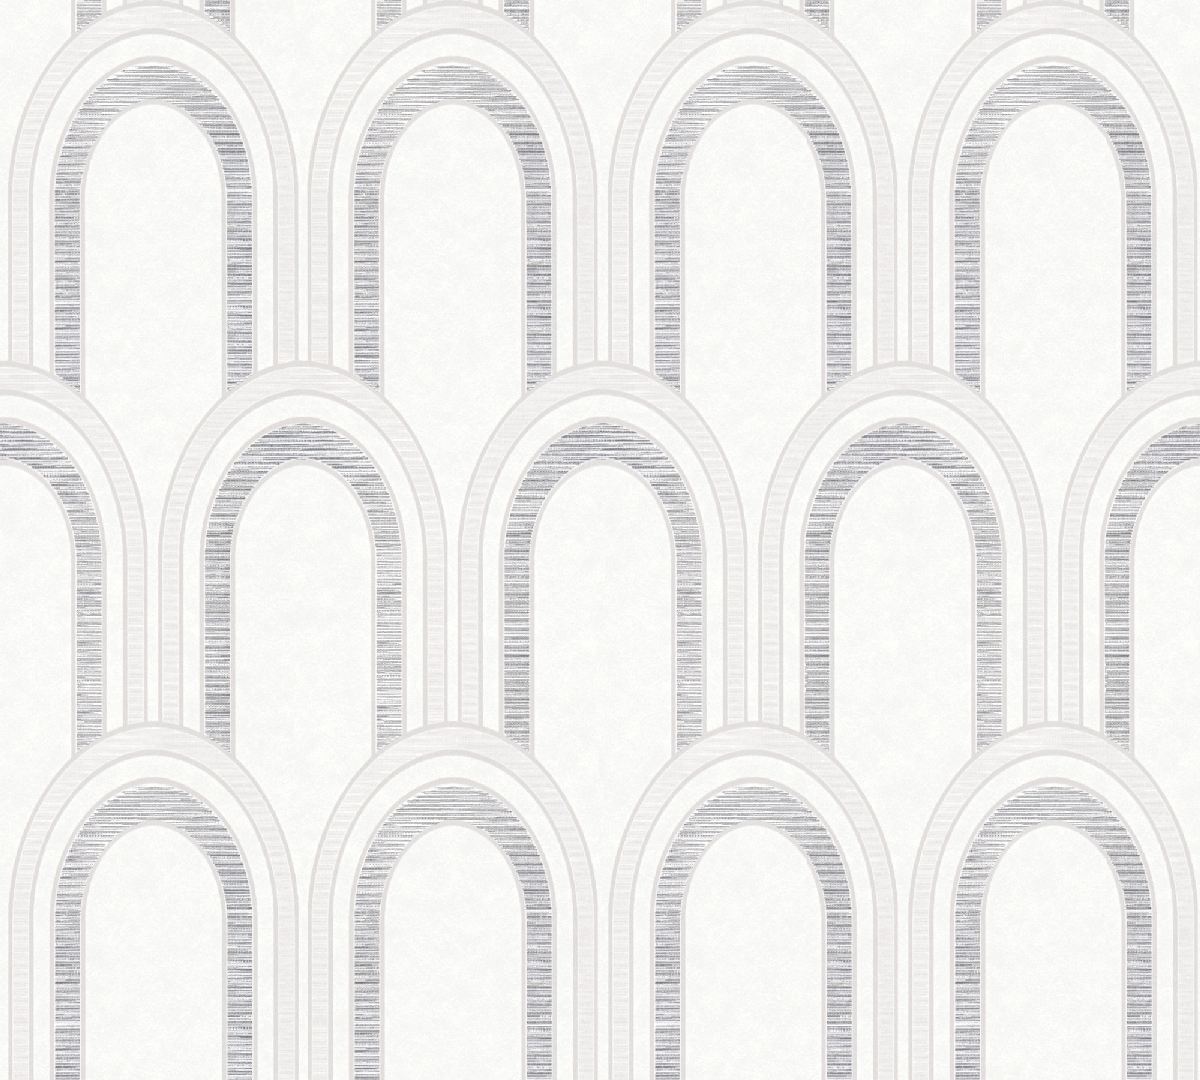 Vliestapete AP Arcade 391764 - Art Deco Muster - Weiß, Grau